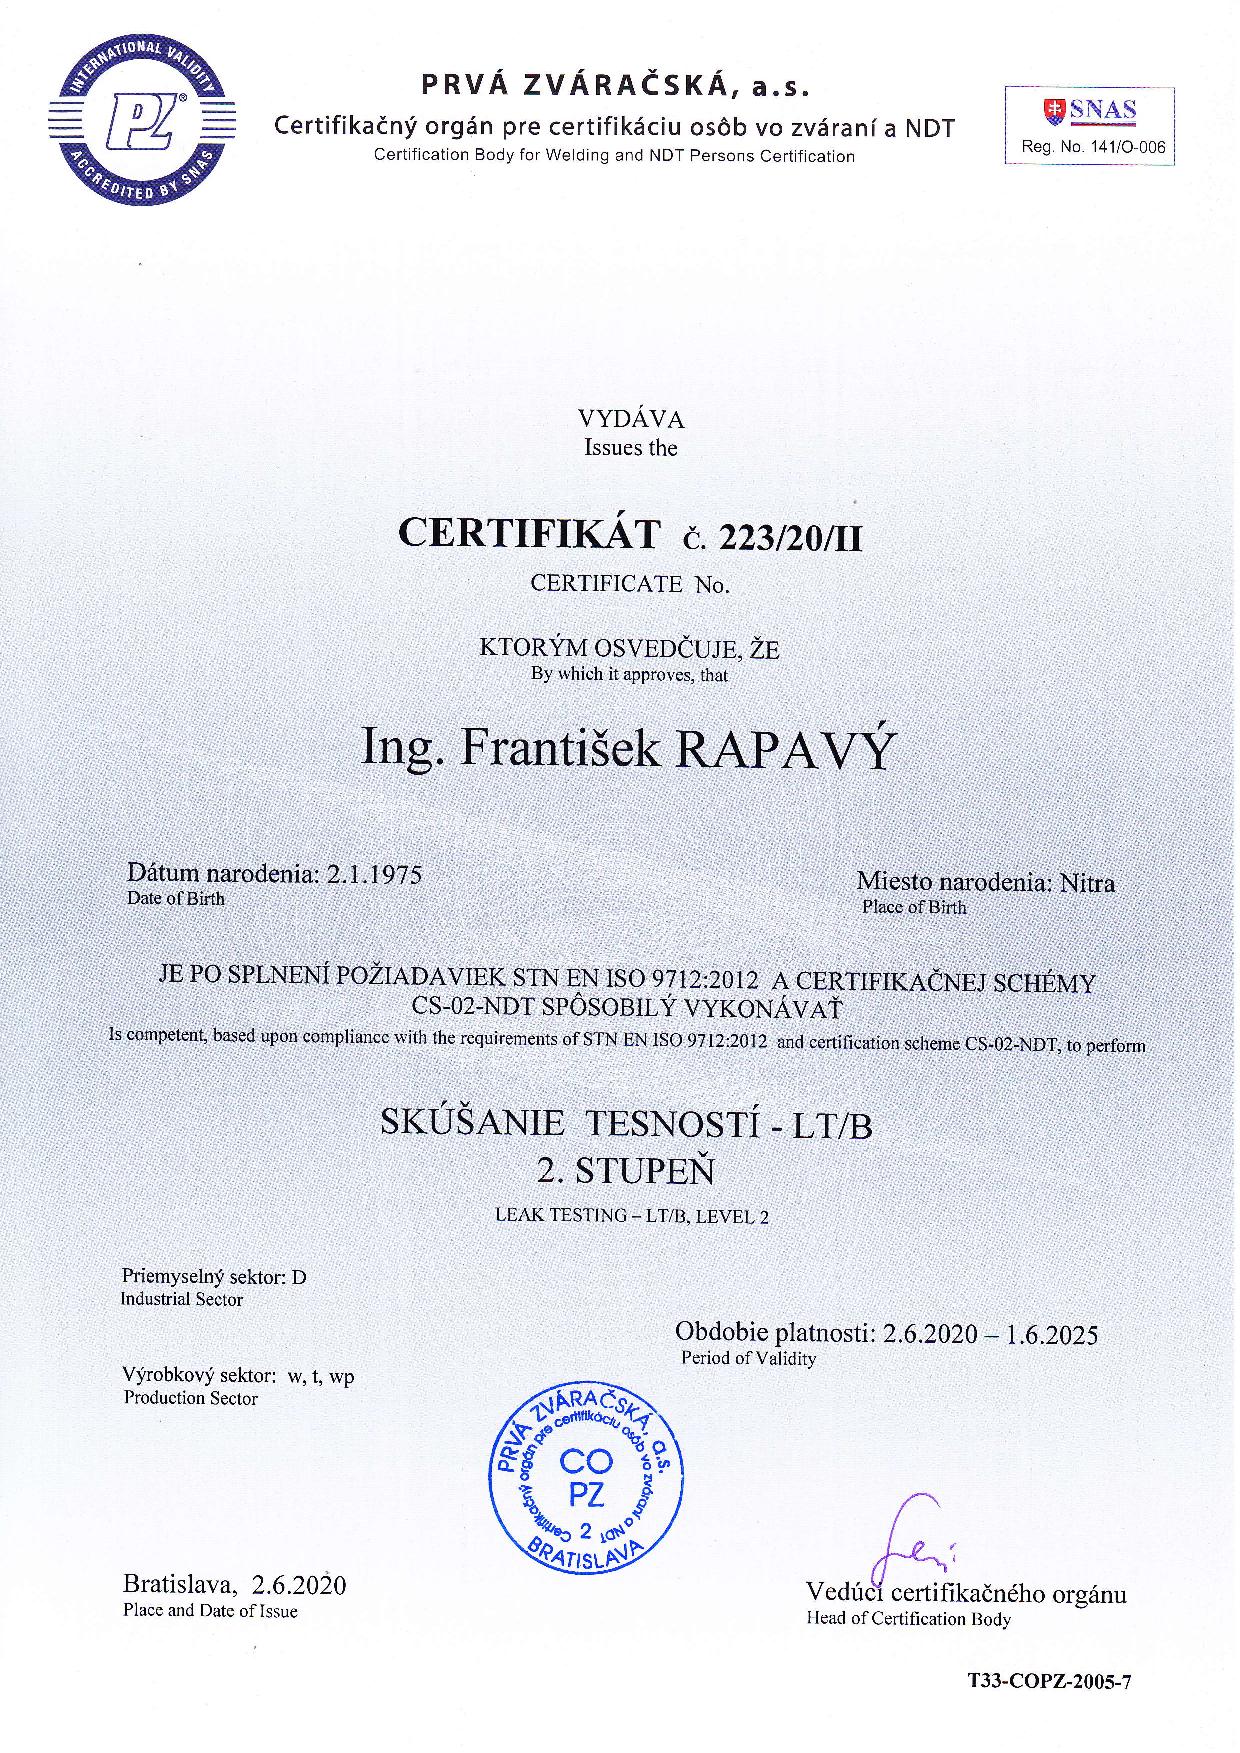 Certifikát pre skúšanie tesnosti - LT/B 2. stupeň podľa požiadaviek STN EN ISO 9712:2012